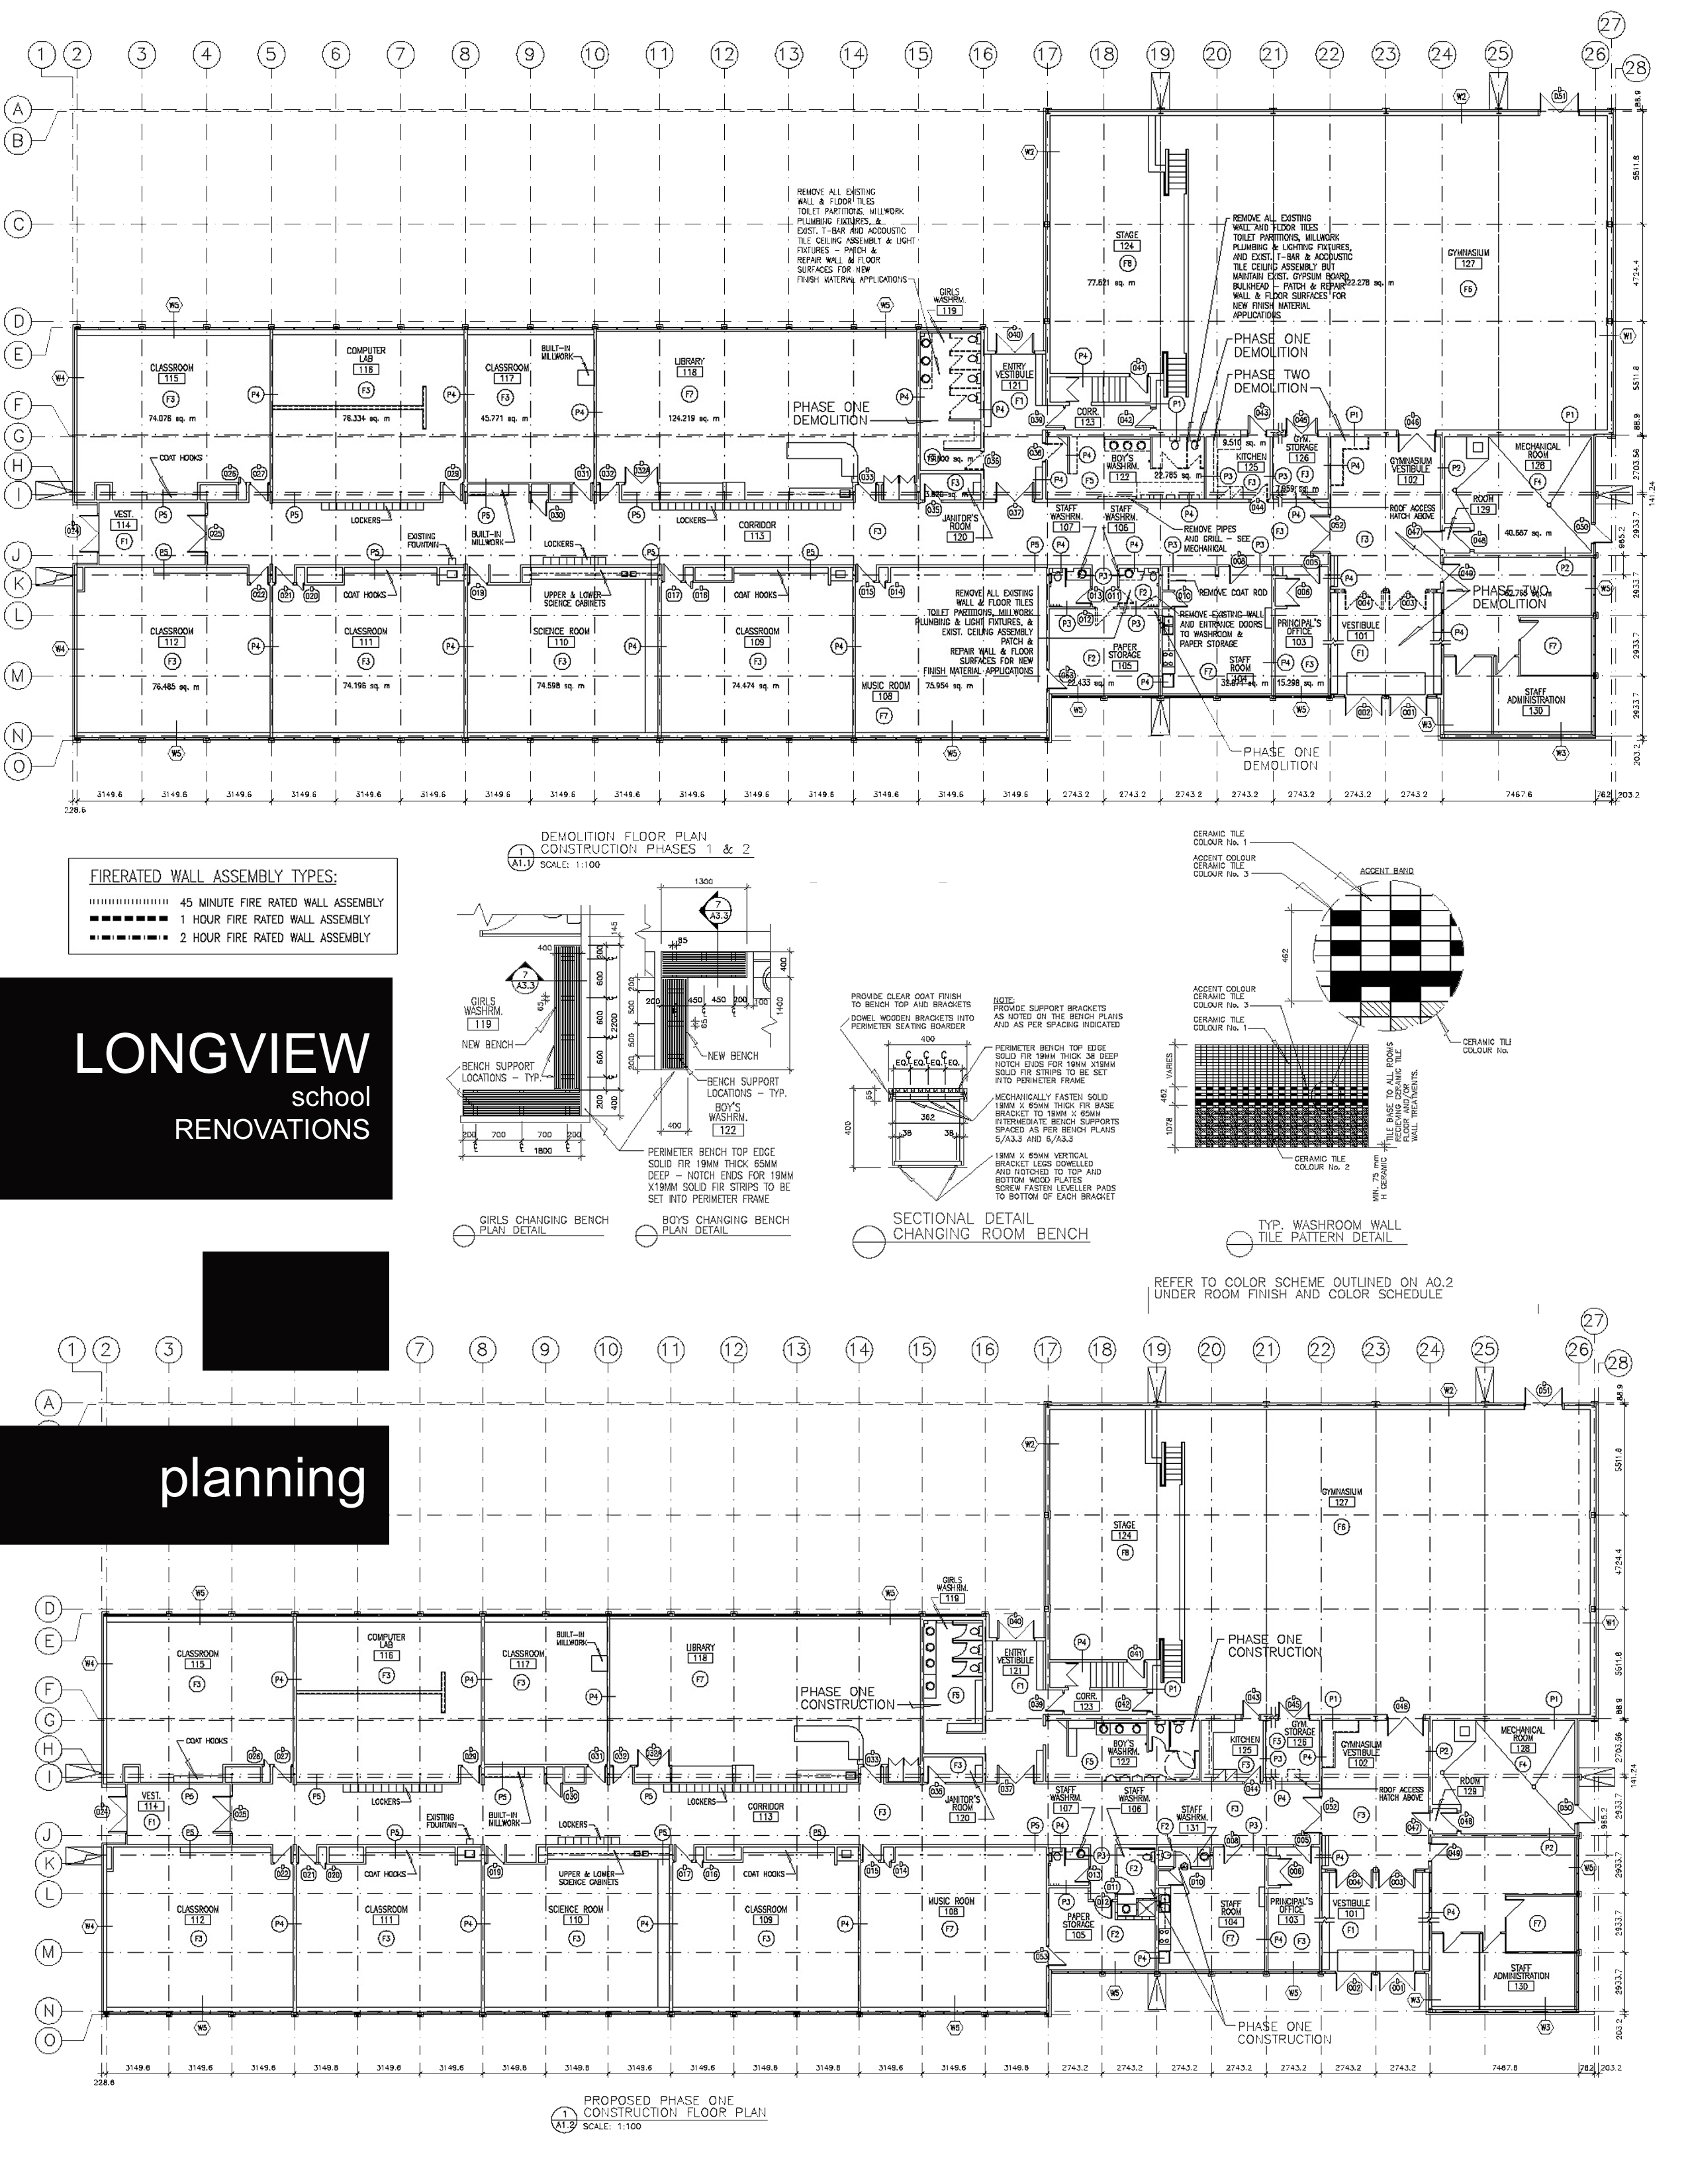 longview_sheet1_copy.jpg